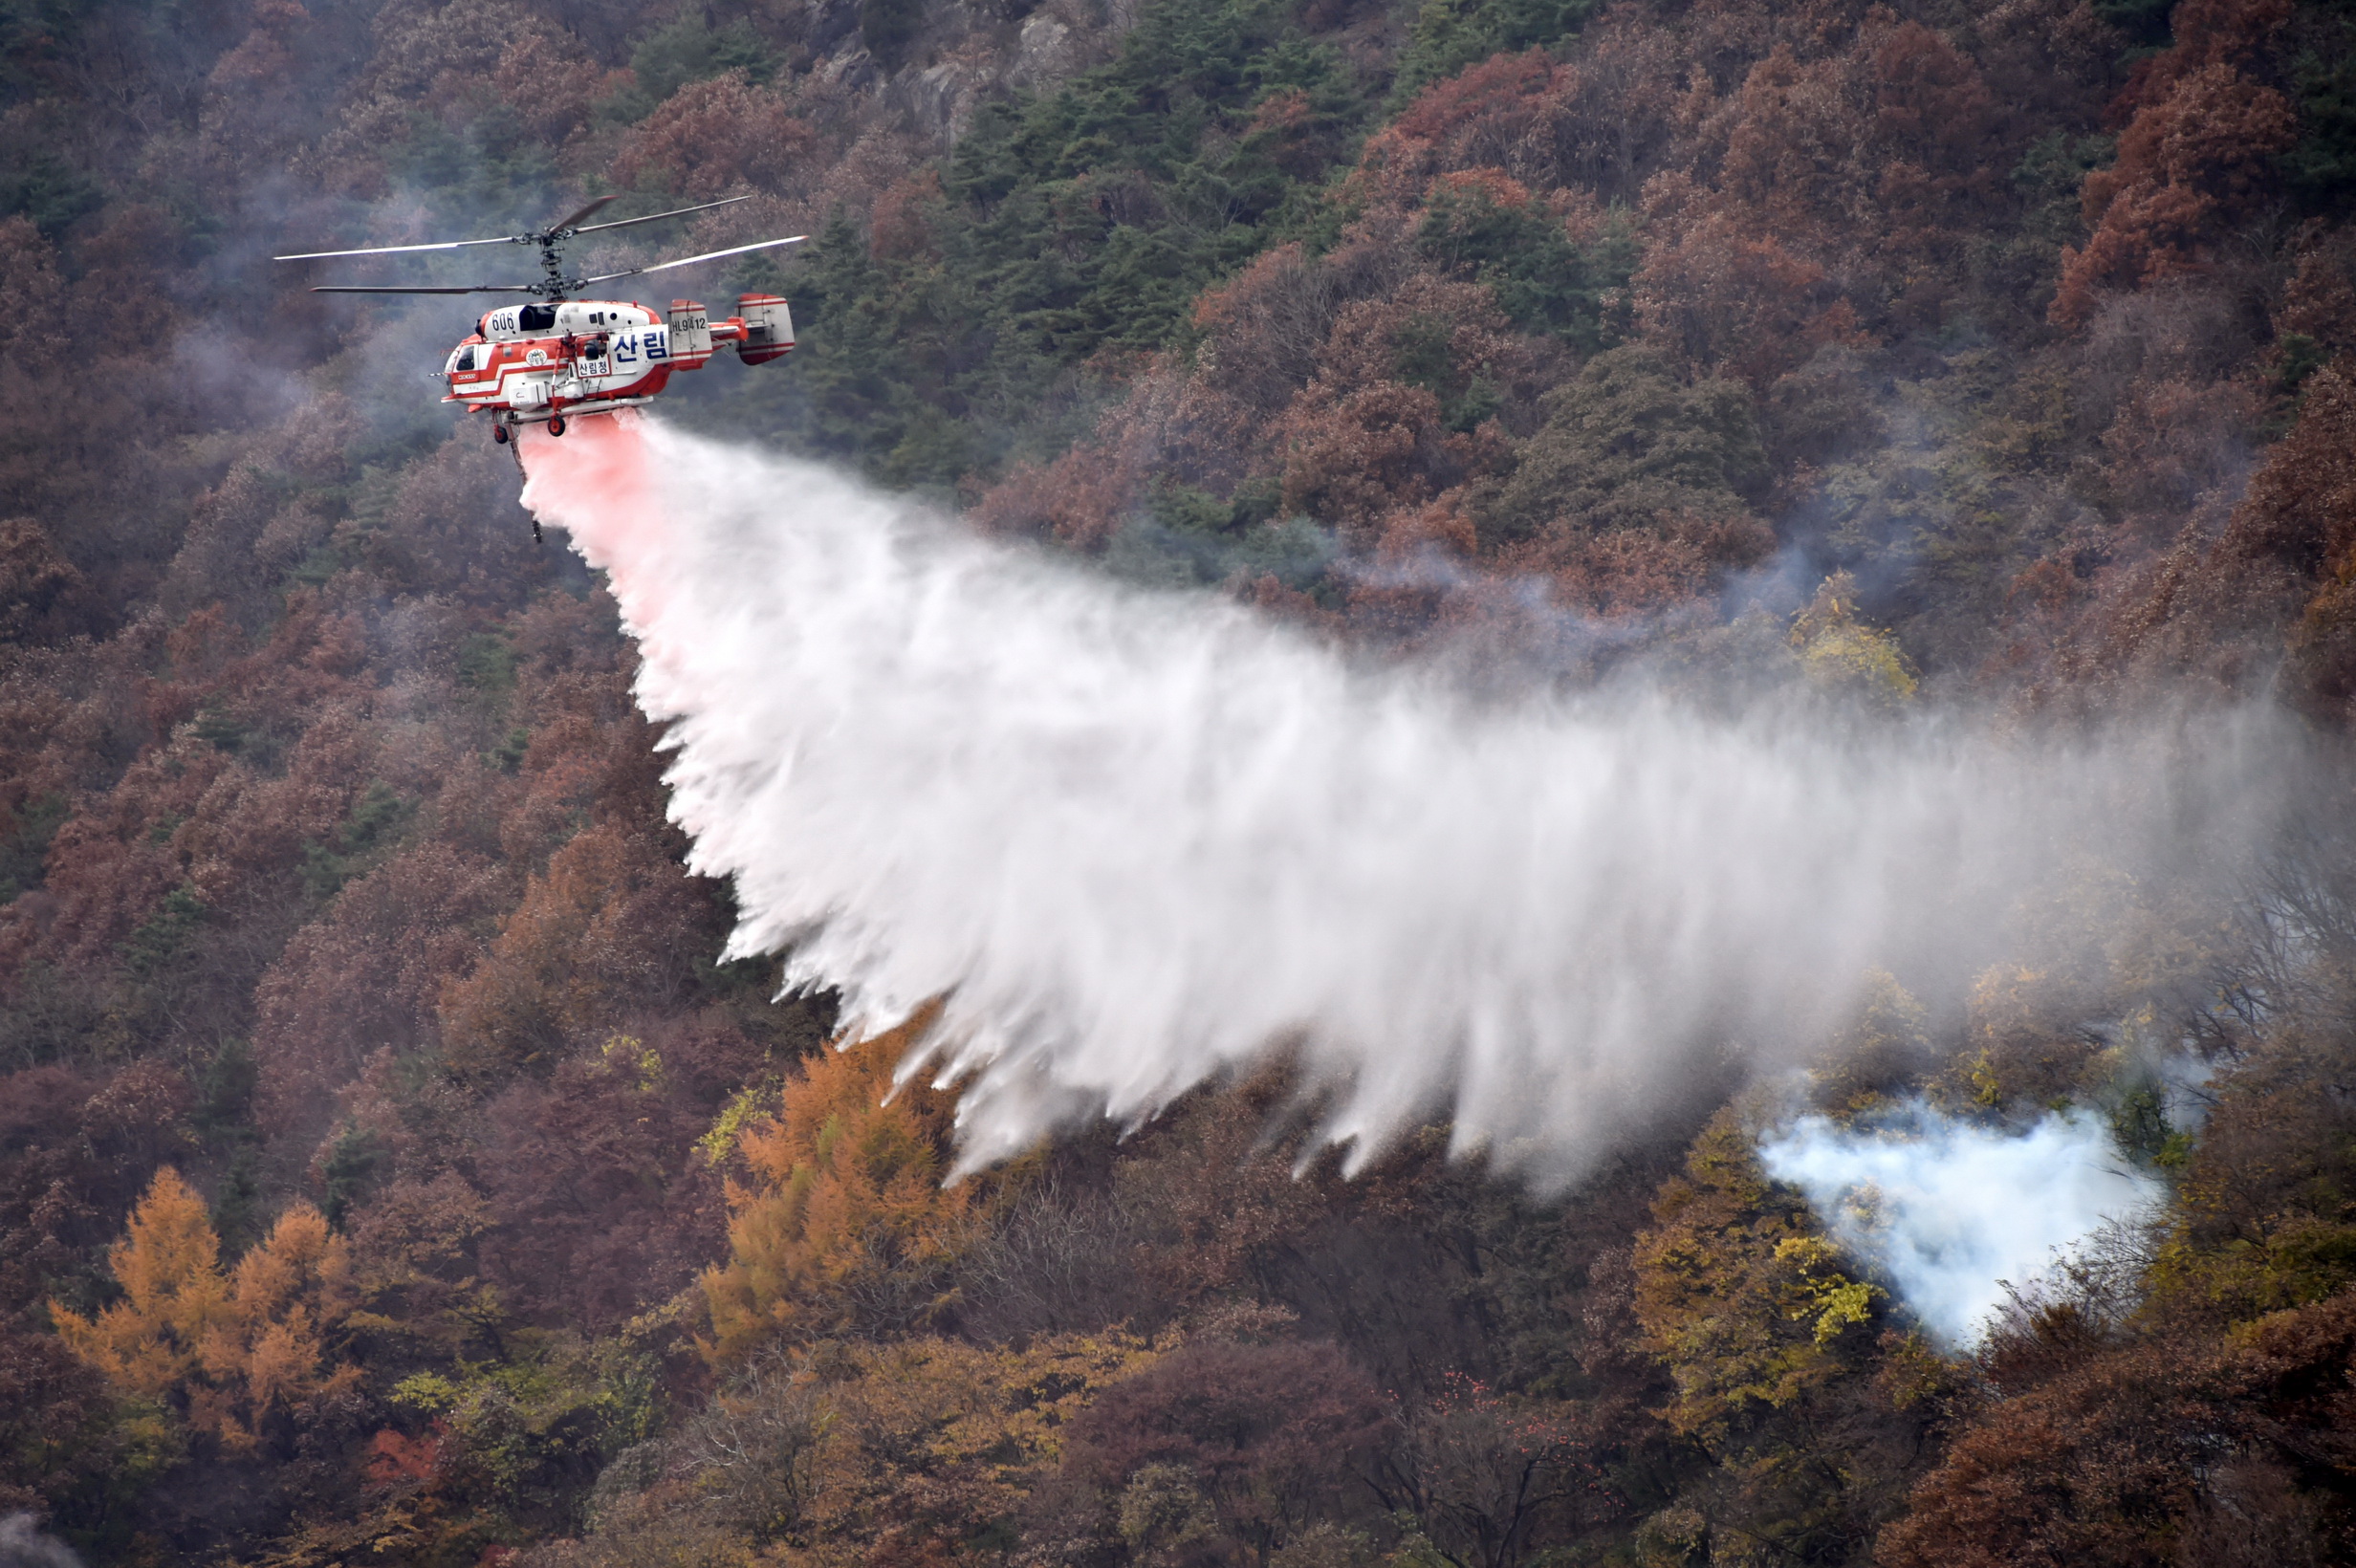 산림청의 카모프 헬기가 산불 현장에 투입돼 진화하고 있다. 산림청 제공